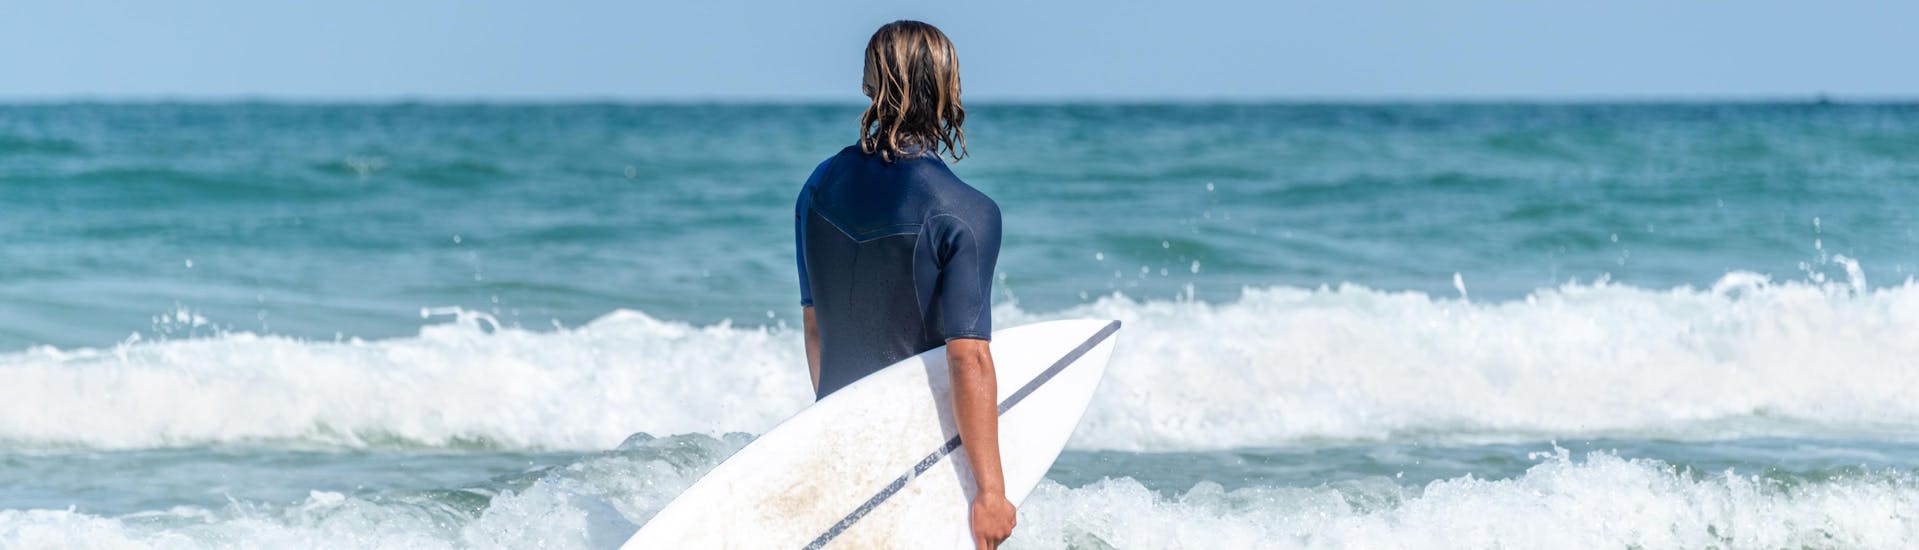 Une photo d'un surfeur debout jusqu'aux genoux au milieu des vagues qui s'apprête à surfer à Arcachon.